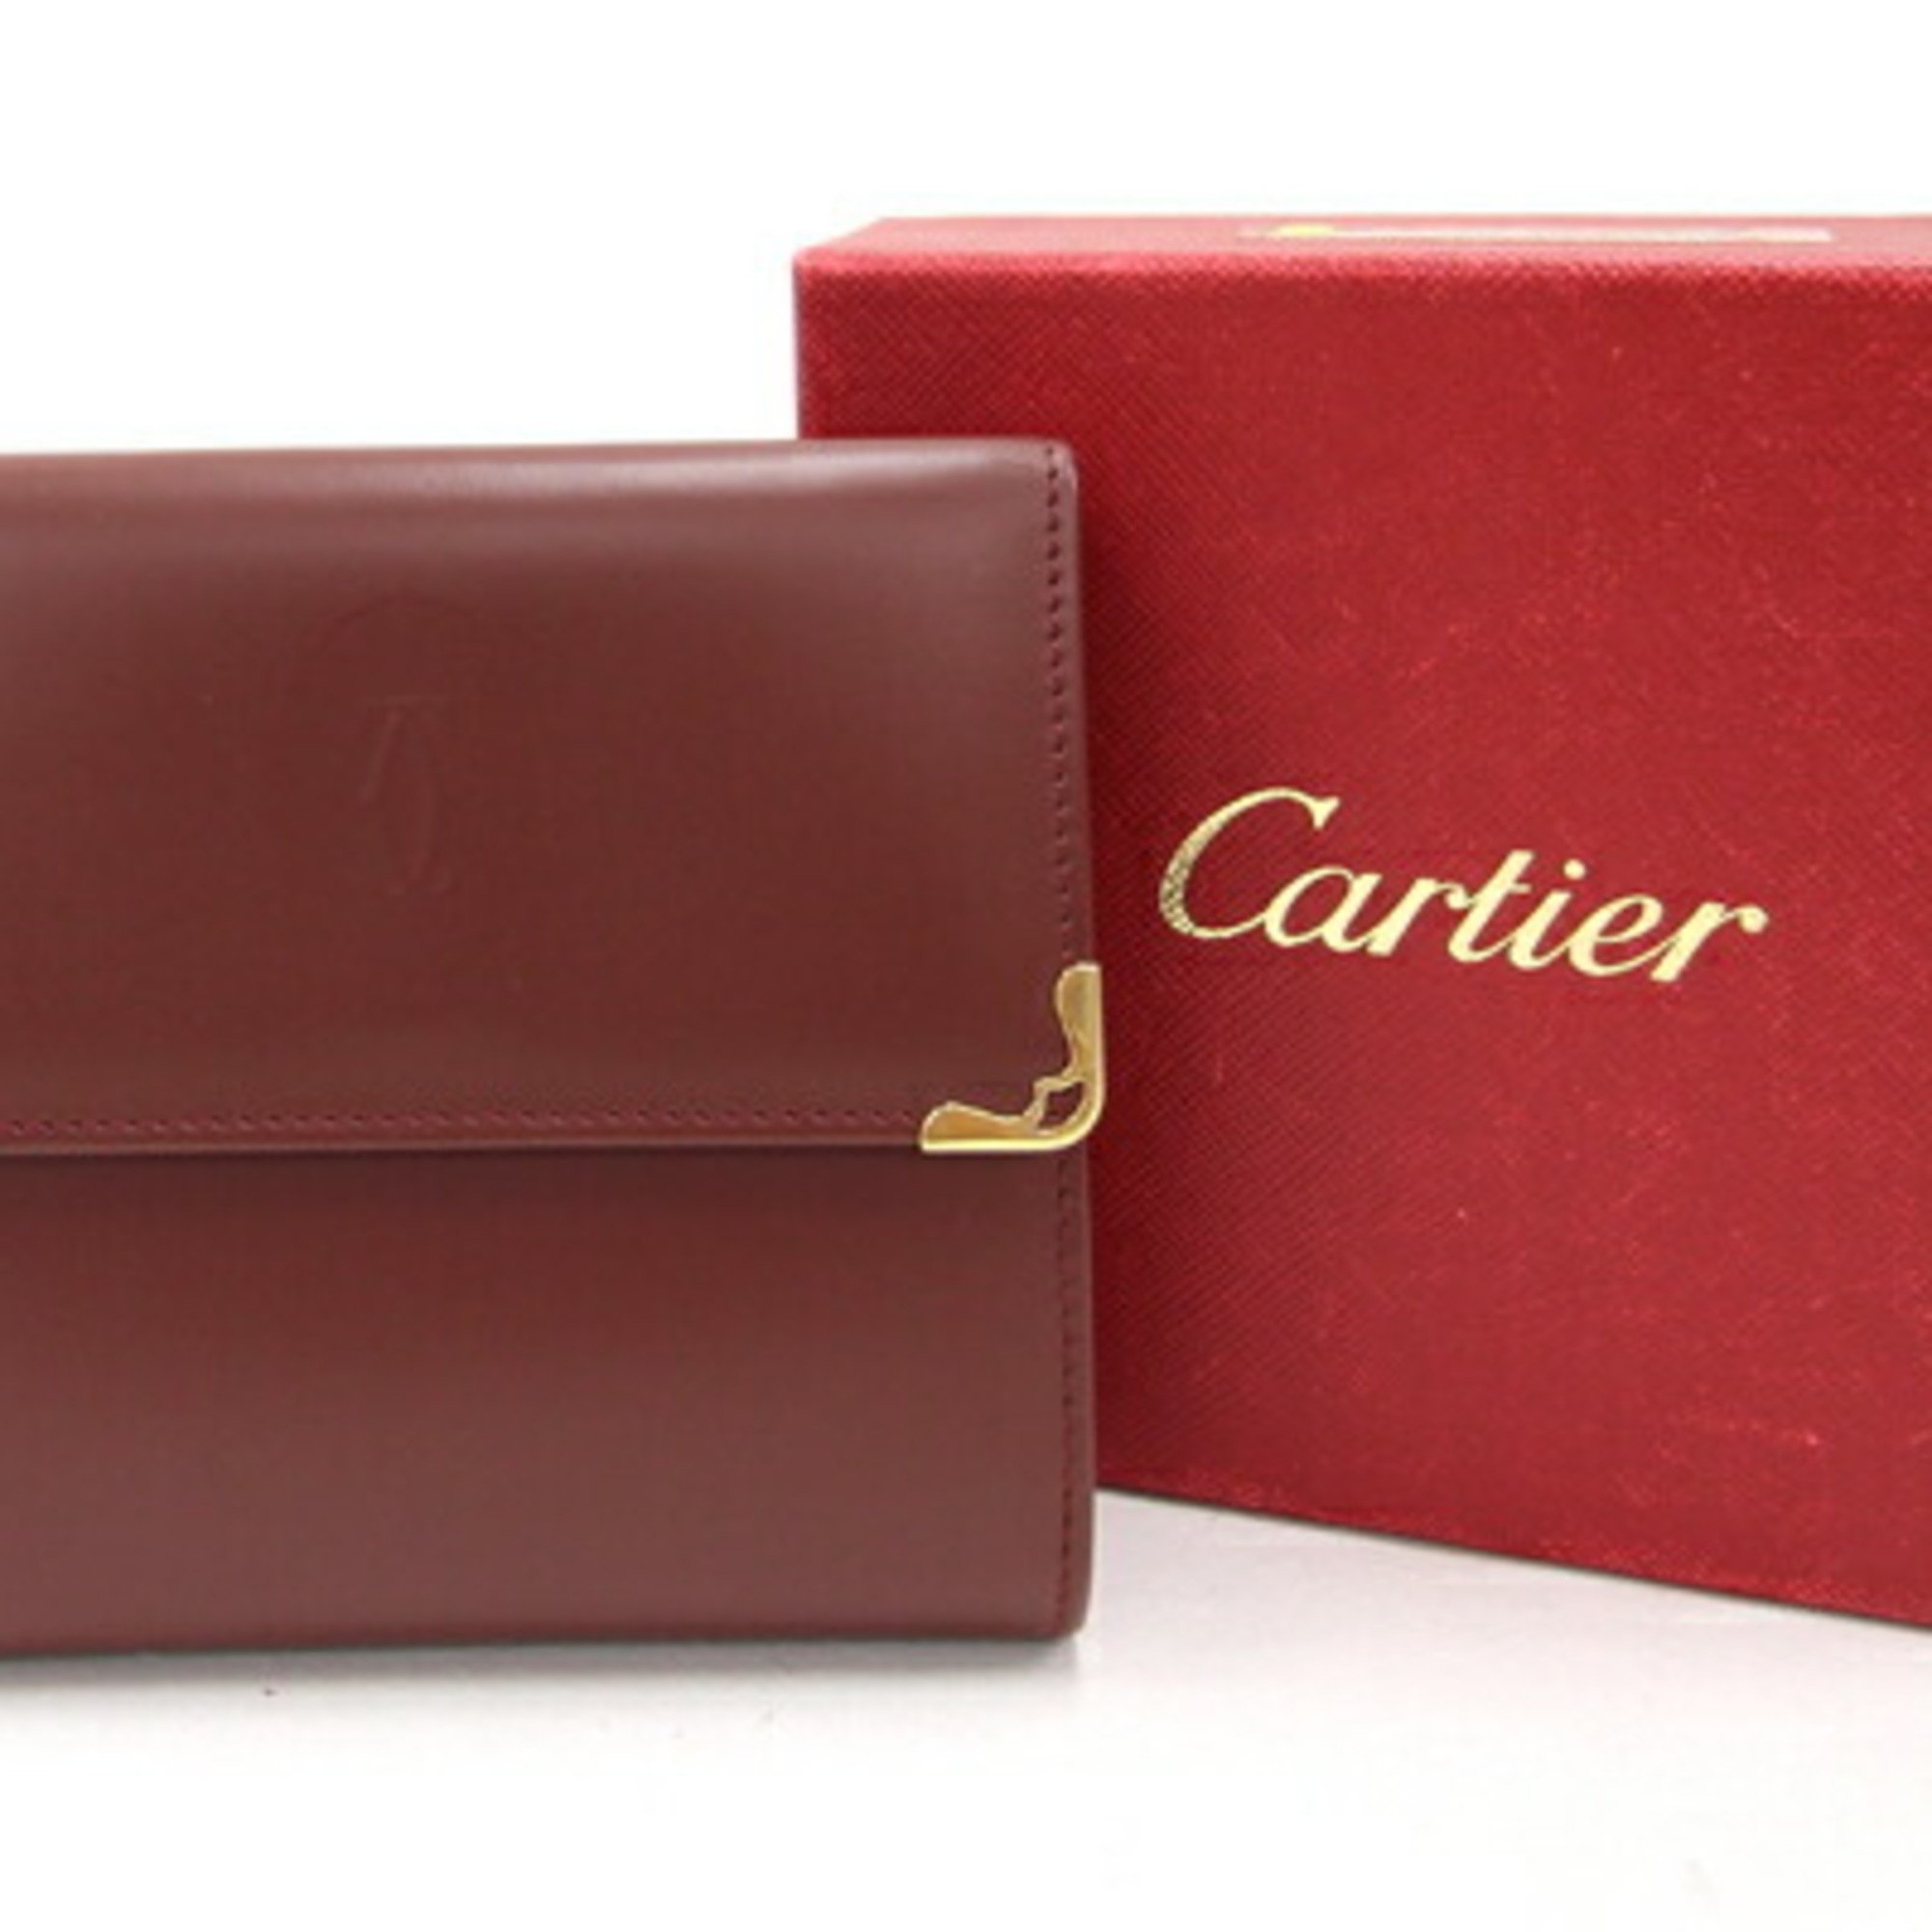 Cartier W wallet mast L3000505 Bordeaux calf leather ladies double doors